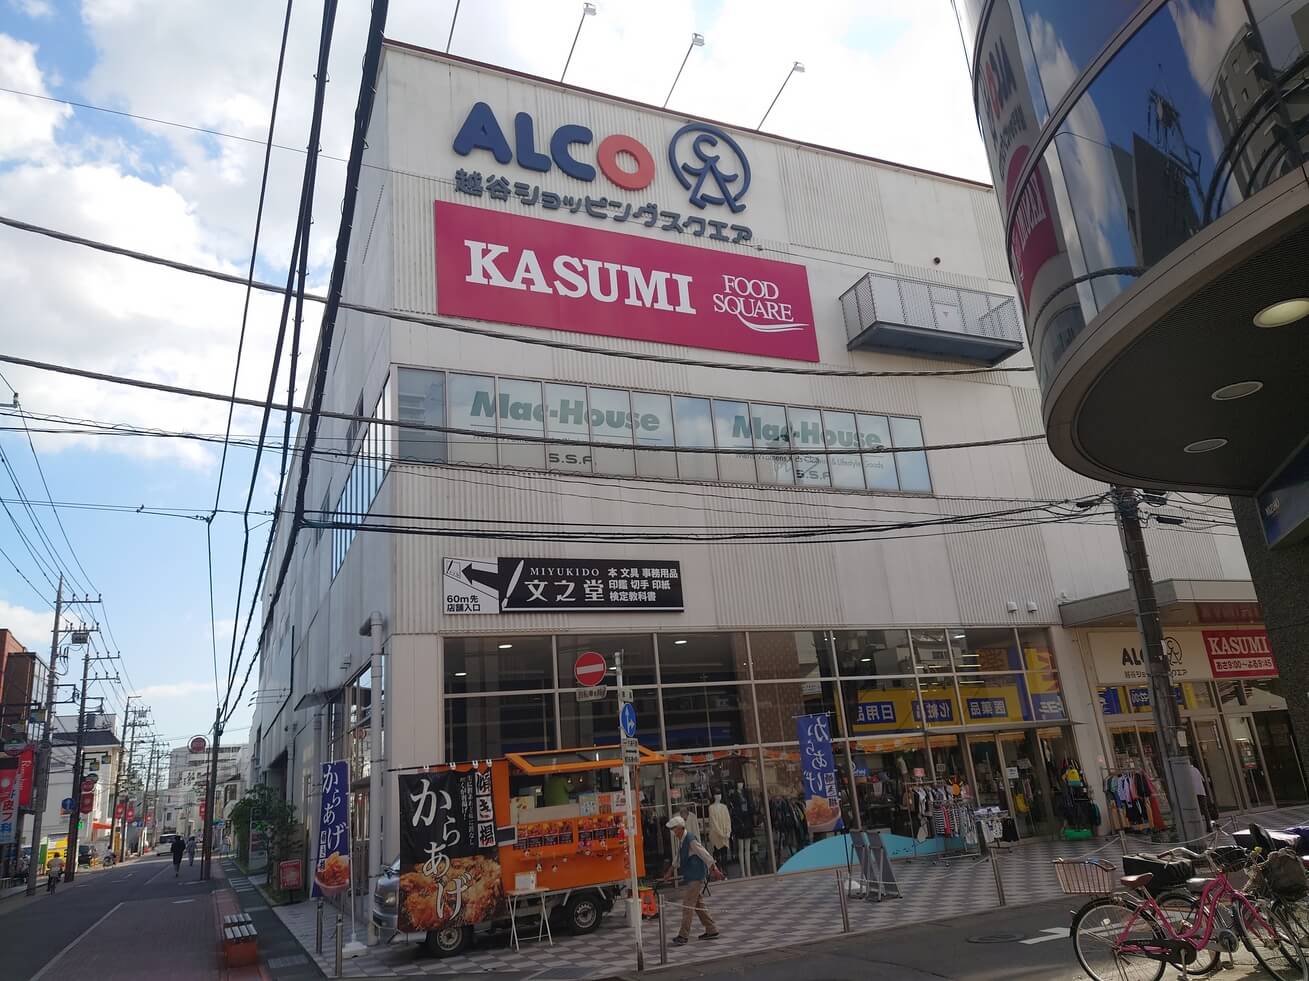 ALCo越谷ショッピングスクエアが出来る前に、ここにあった建物の名前ってなーんだ？【がやてっくクイズVol.5】